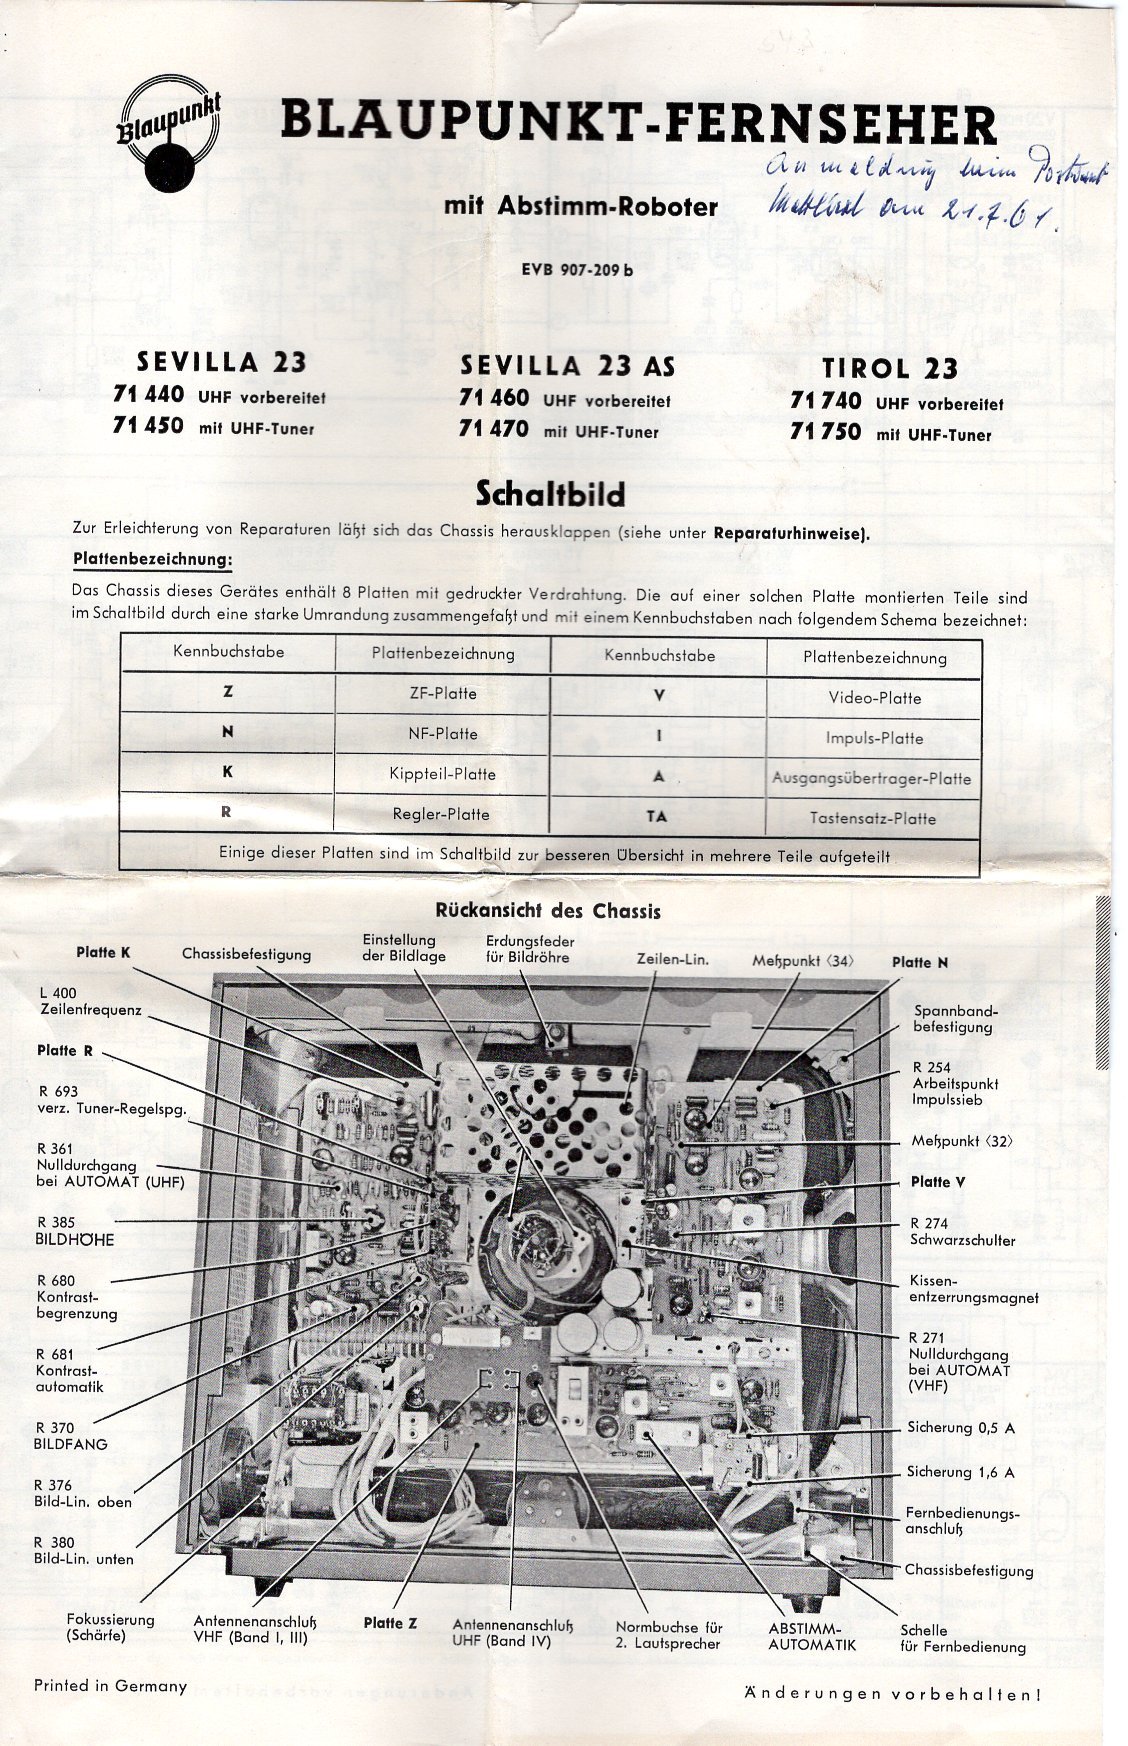 Schaltplan für TV "Blaupunkt Tirol 23" (Freilichtmuseum Roscheider Hof CC0)